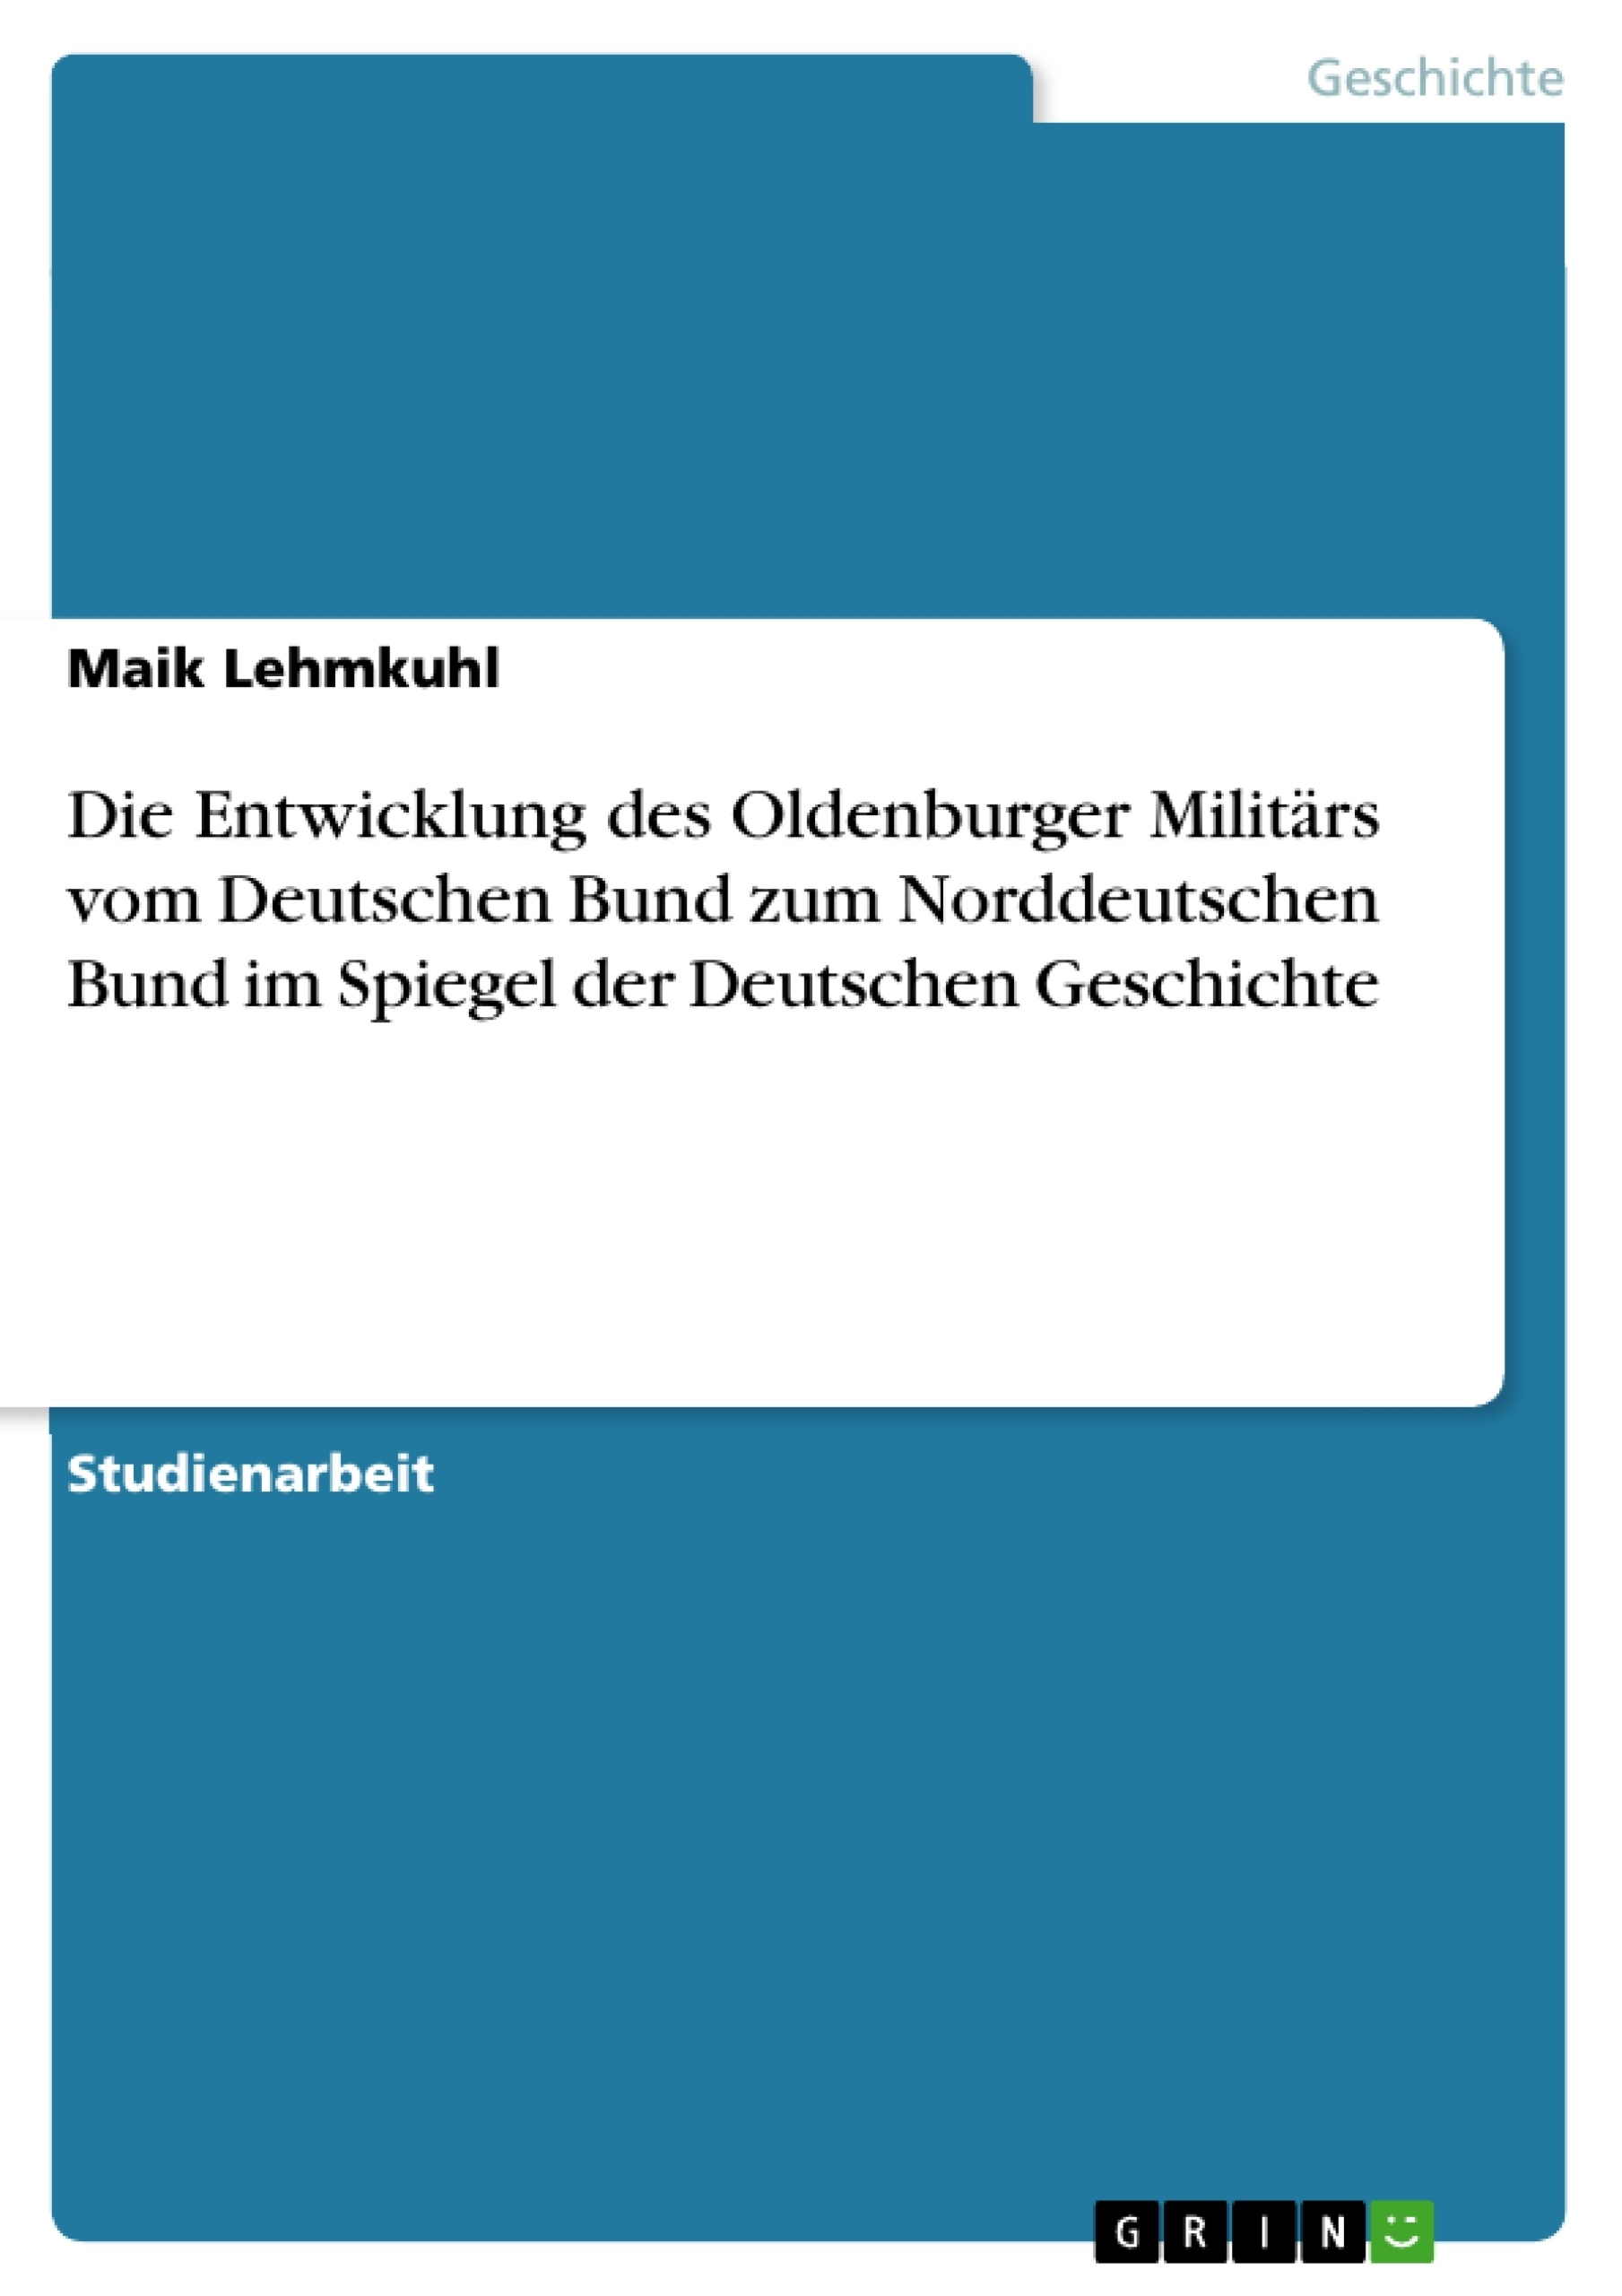 Título: Die Entwicklung des Oldenburger Militärs vom Deutschen Bund zum Norddeutschen Bund im Spiegel der Deutschen Geschichte